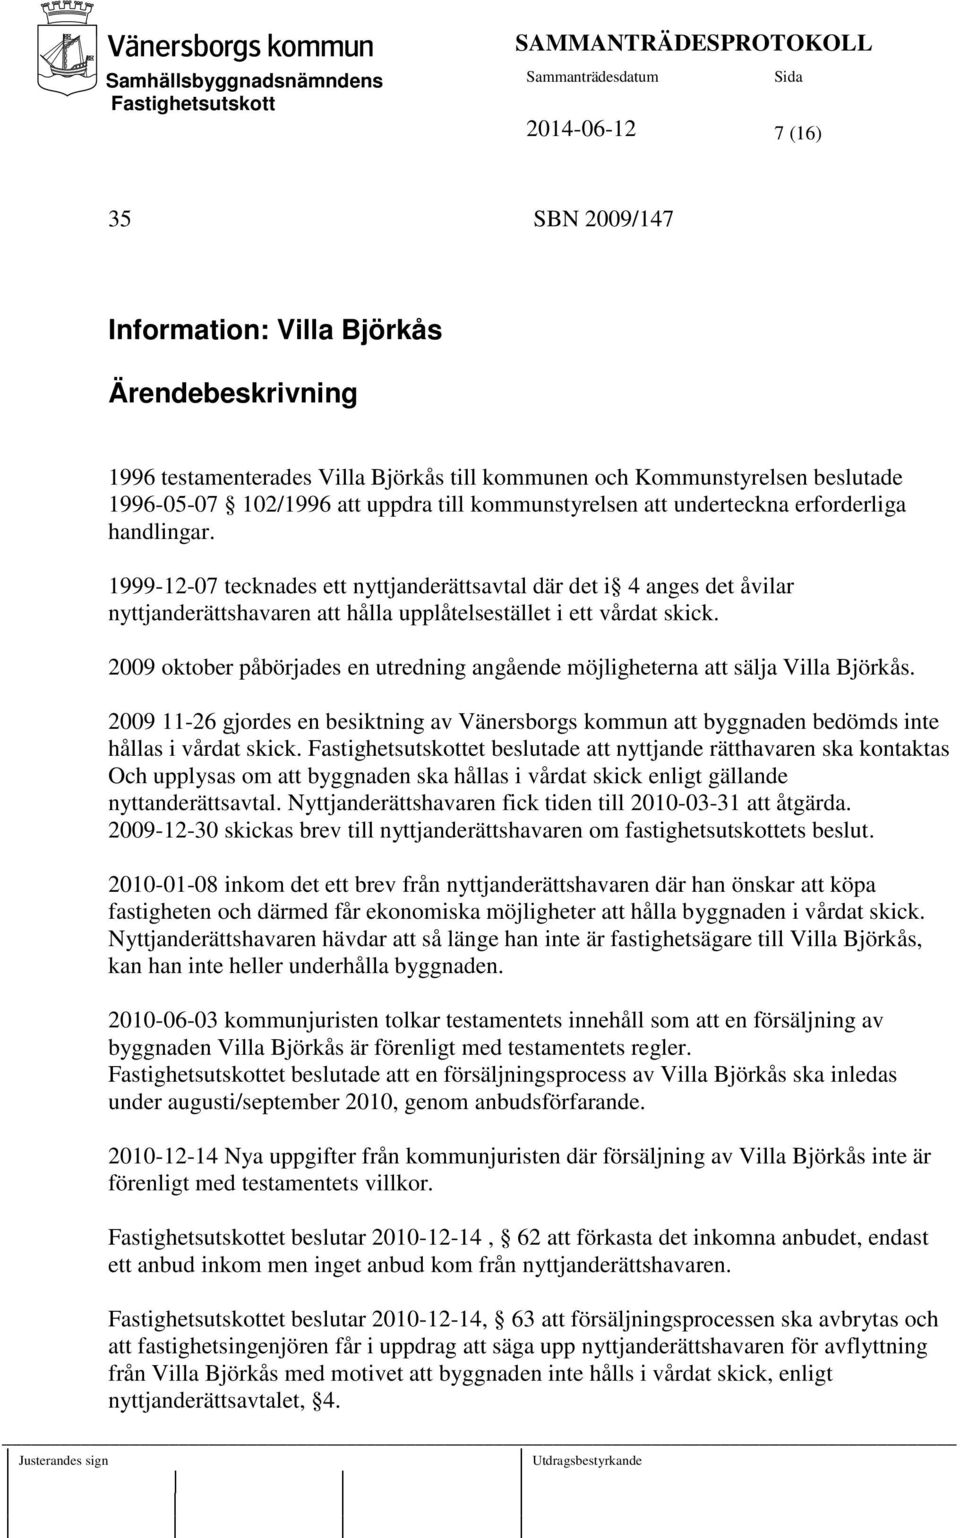 2009 oktober påbörjades en utredning angående möjligheterna att sälja Villa Björkås. 2009 11-26 gjordes en besiktning av Vänersborgs kommun att byggnaden bedömds inte hållas i vårdat skick.